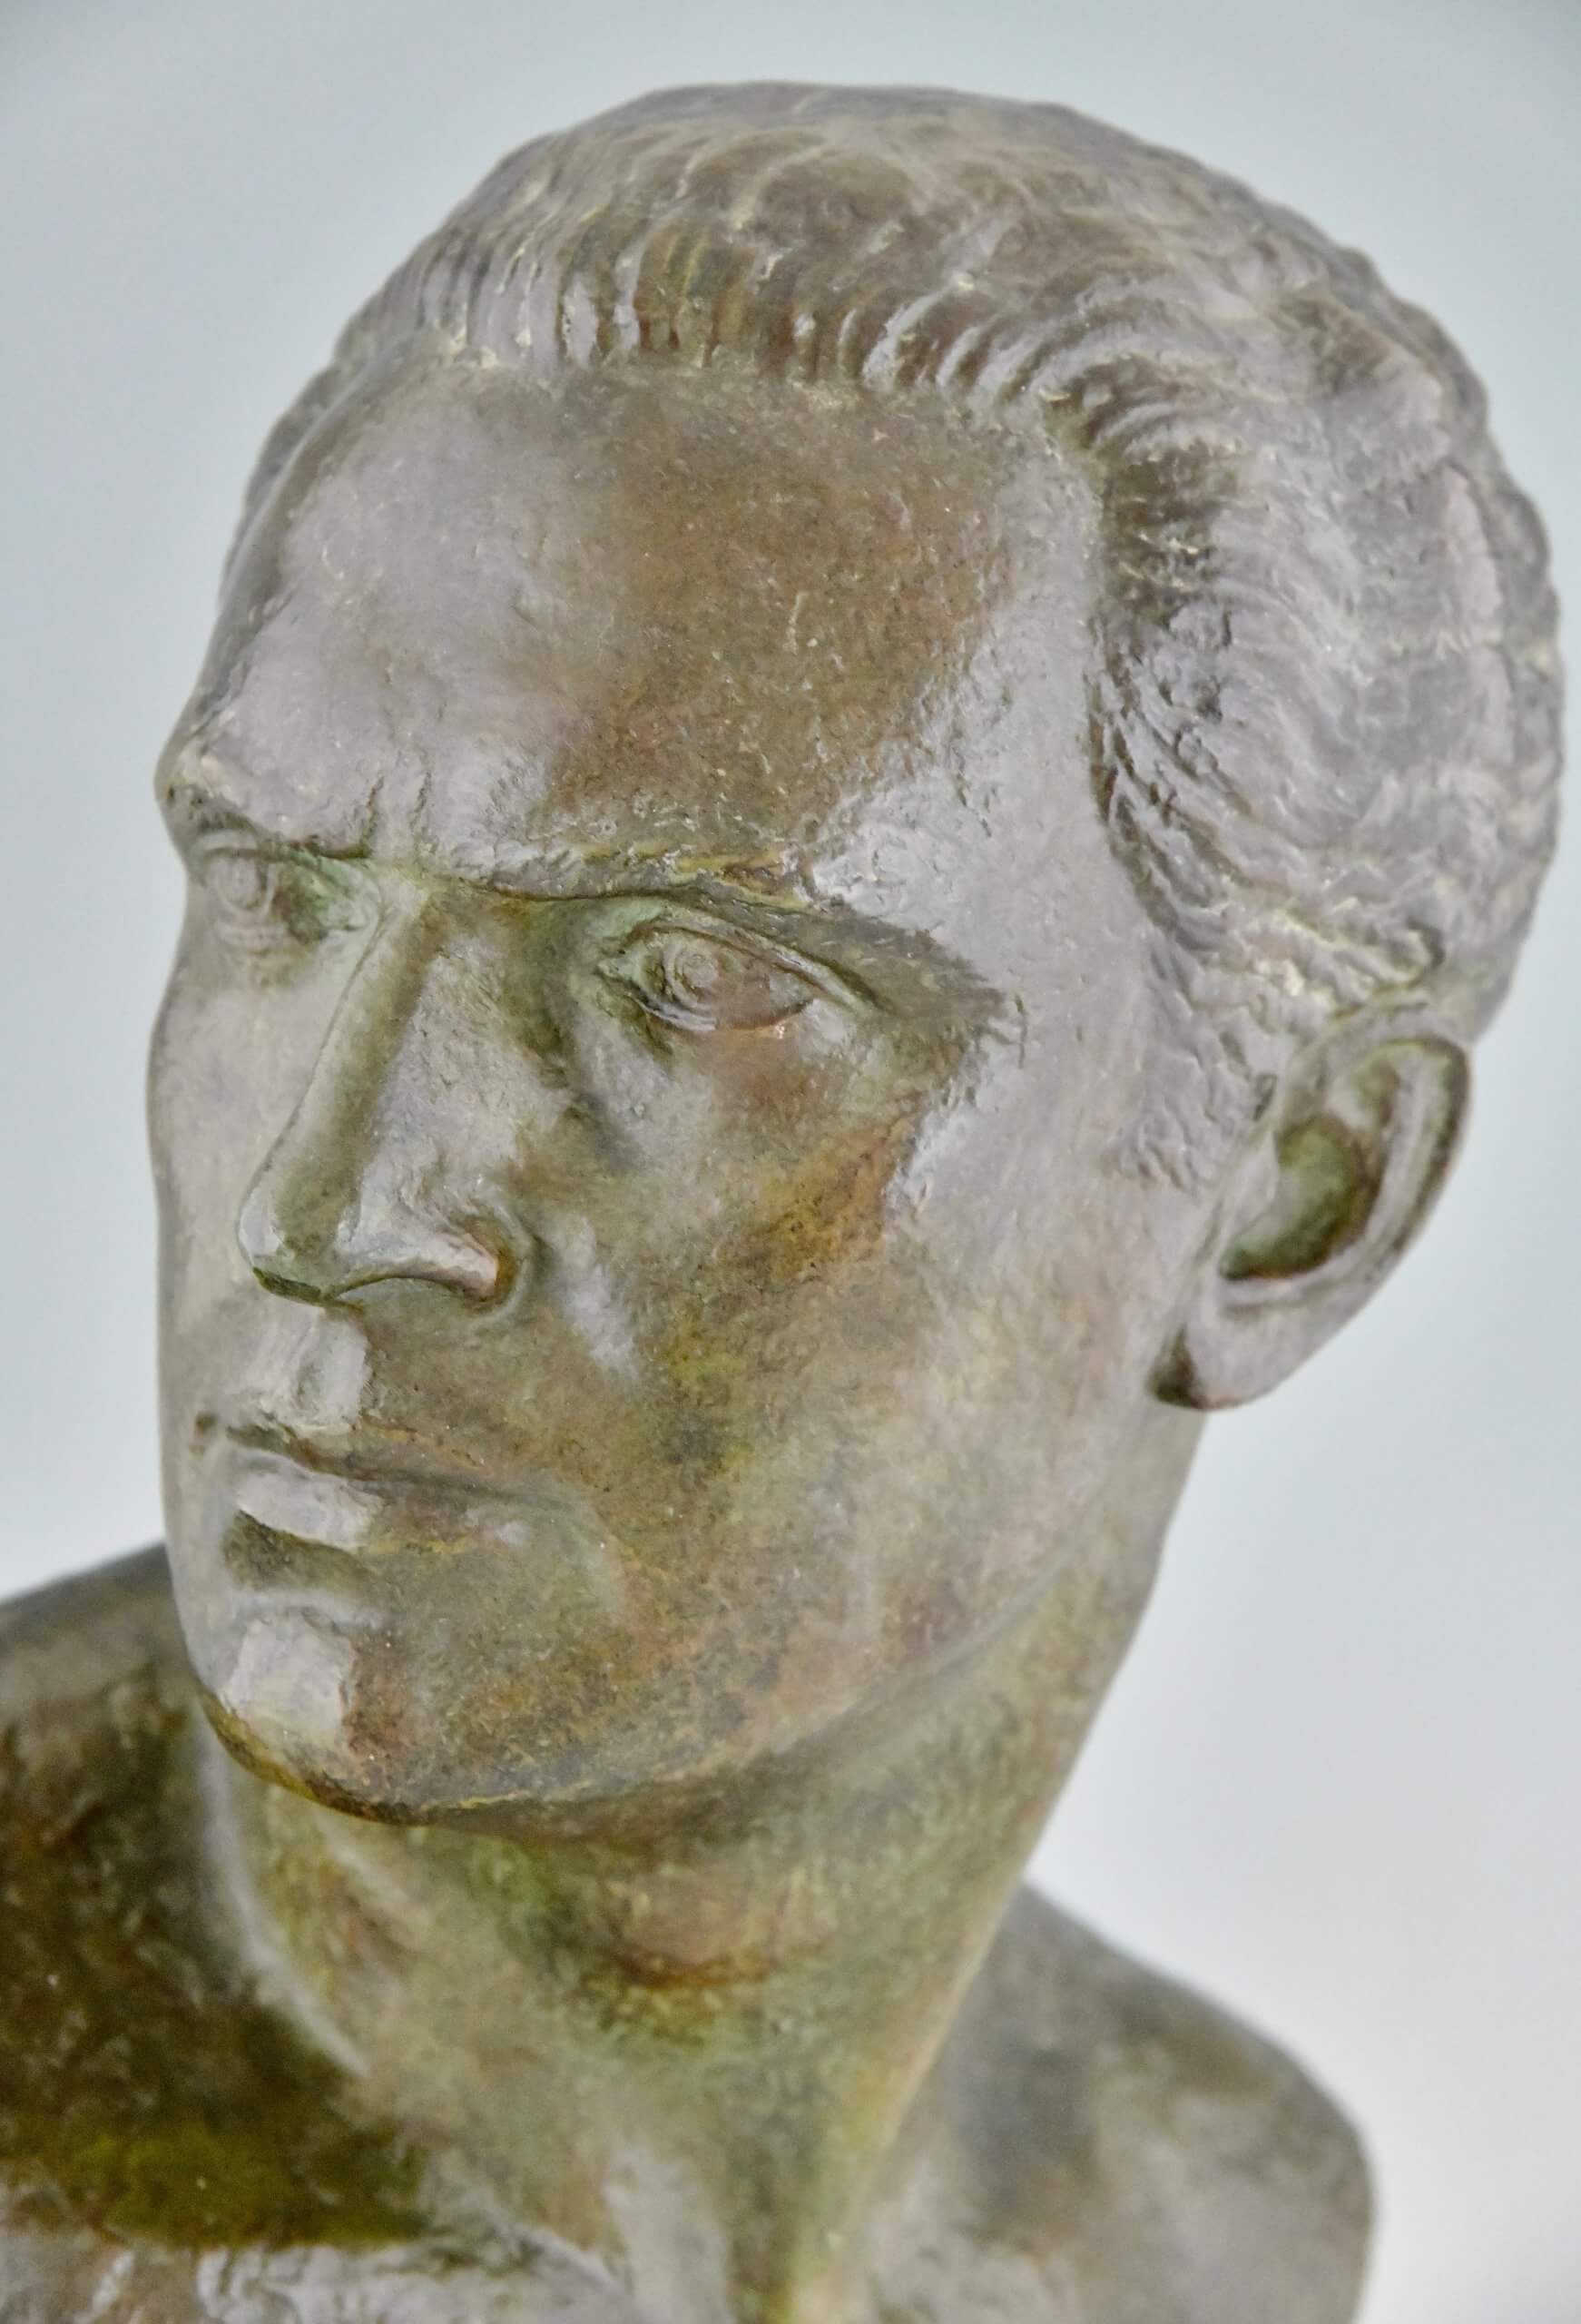 Art Deco bronzen sculptuur buste Jean Mermoz piloot